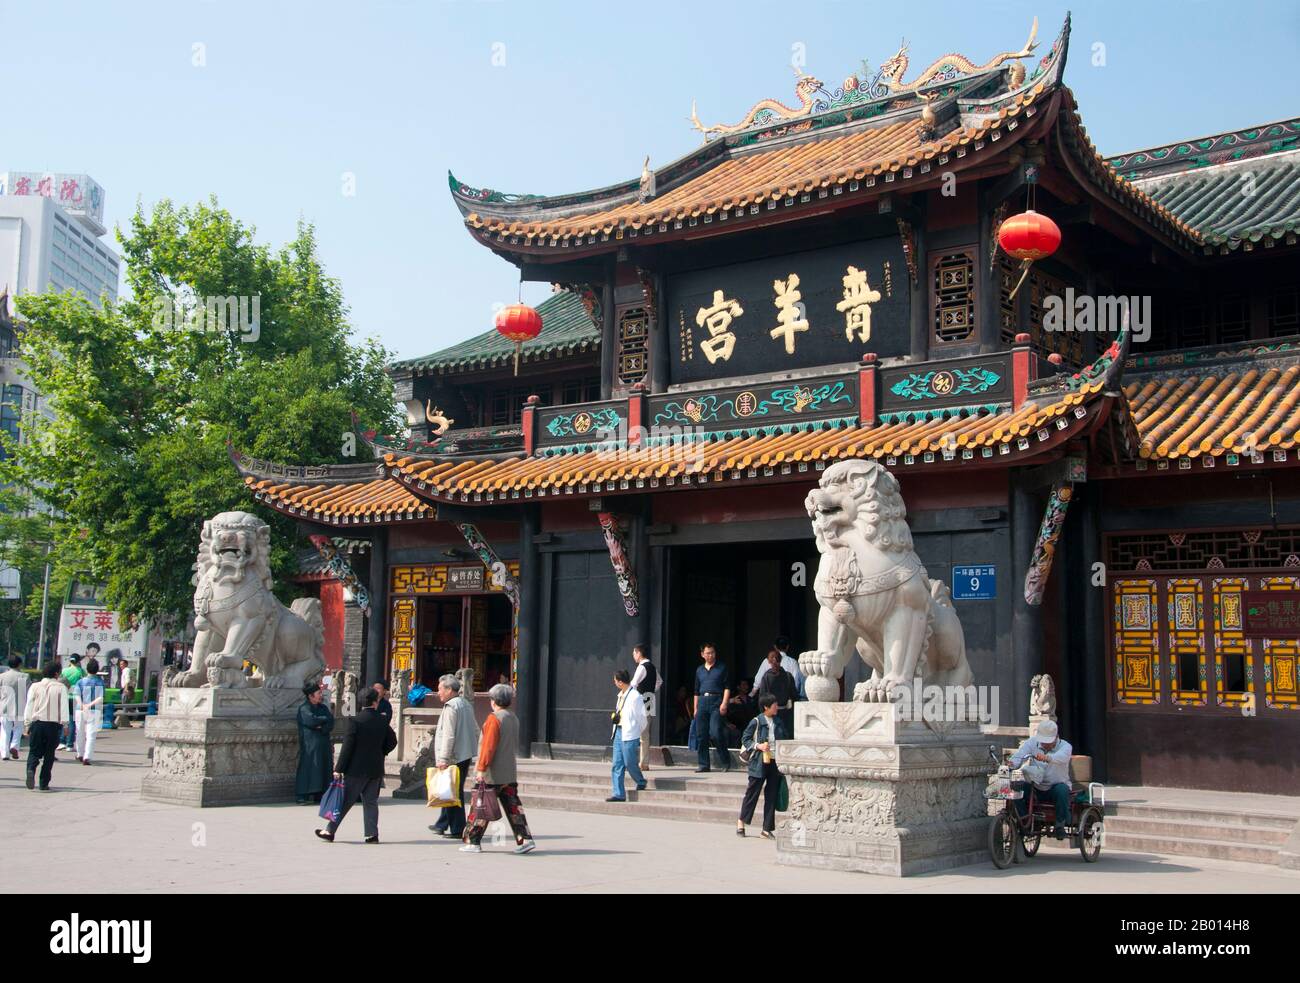 China: Der Eingang zum Qingyang Gong (Tempel der grünen Ziege), Chengdu, Provinz Sichuan. Qingyang Gong Shi (Tempel des Palastes der grünen Ziege) ist der älteste und größte daoistische Tempel im Südwesten Chinas. Es liegt im westlichen Teil der Stadt Chengdu. Ursprünglich in der frühen Tang-Dynastie (618-907) erbaut, wurde dieser Tempel viele Male wieder aufgebaut und repariert. Die bestehenden Gebäude wurden hauptsächlich während der Qing-Dynastie (1644-1911) gebaut. Der Legende nach soll Qing Yang Gong der Geburtsort des Begründers des Taoismus, Lao Tsu / Laozi, sein und er hielt seine erste Predigt. Stockfoto